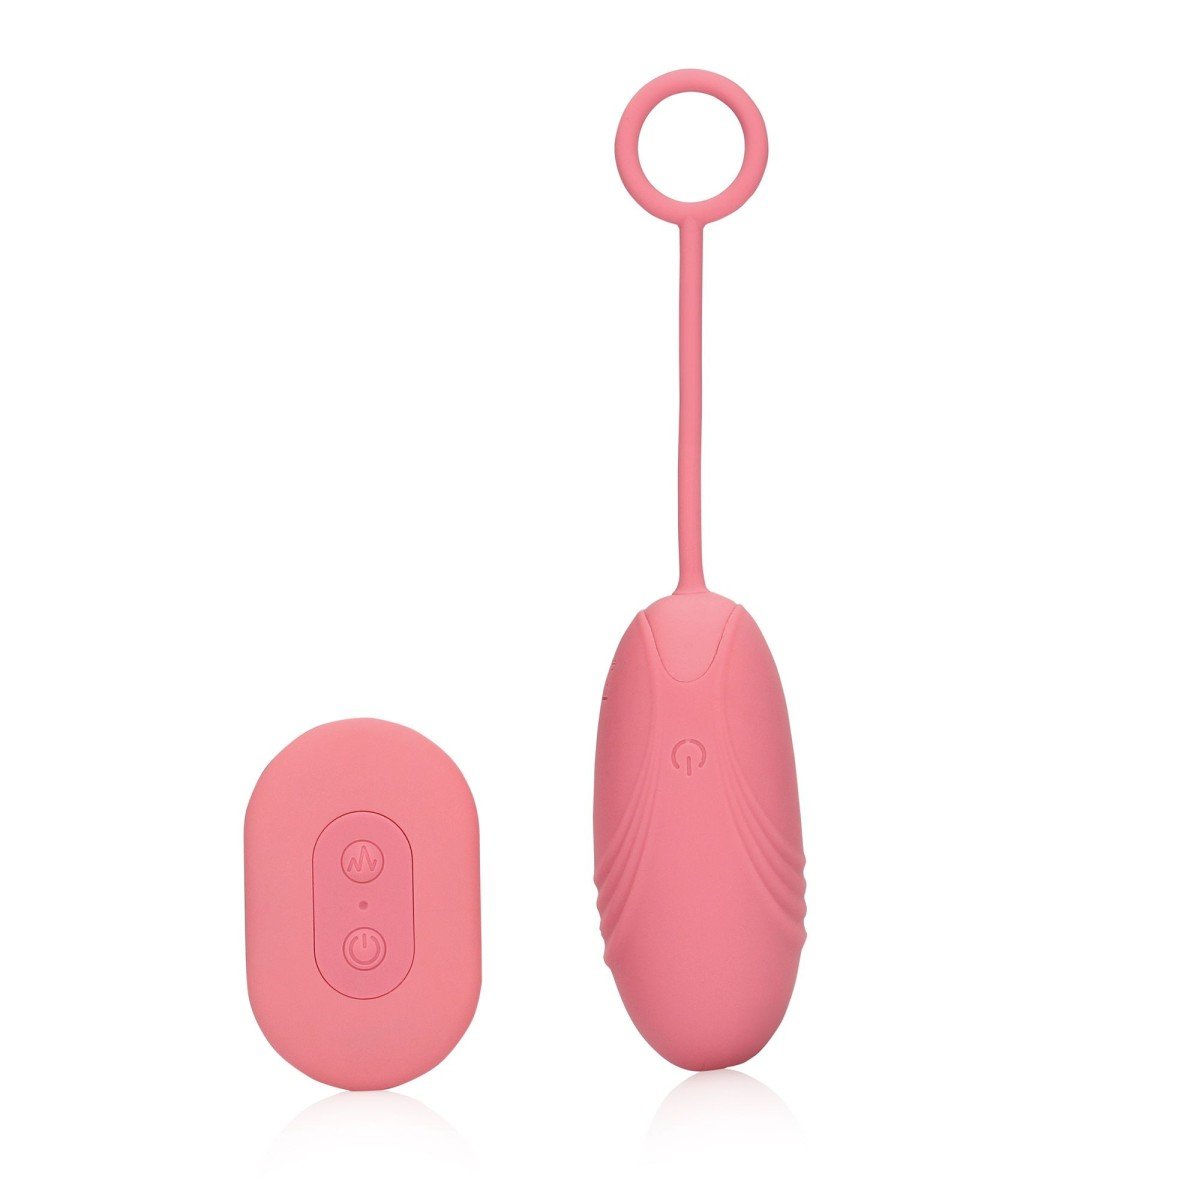 Shots Loveline Ultra Soft Silicone Egg Vibrator with Remote Control Pink Arabesque, silikonové vibrační vajíčko s dálkovým ovládáním